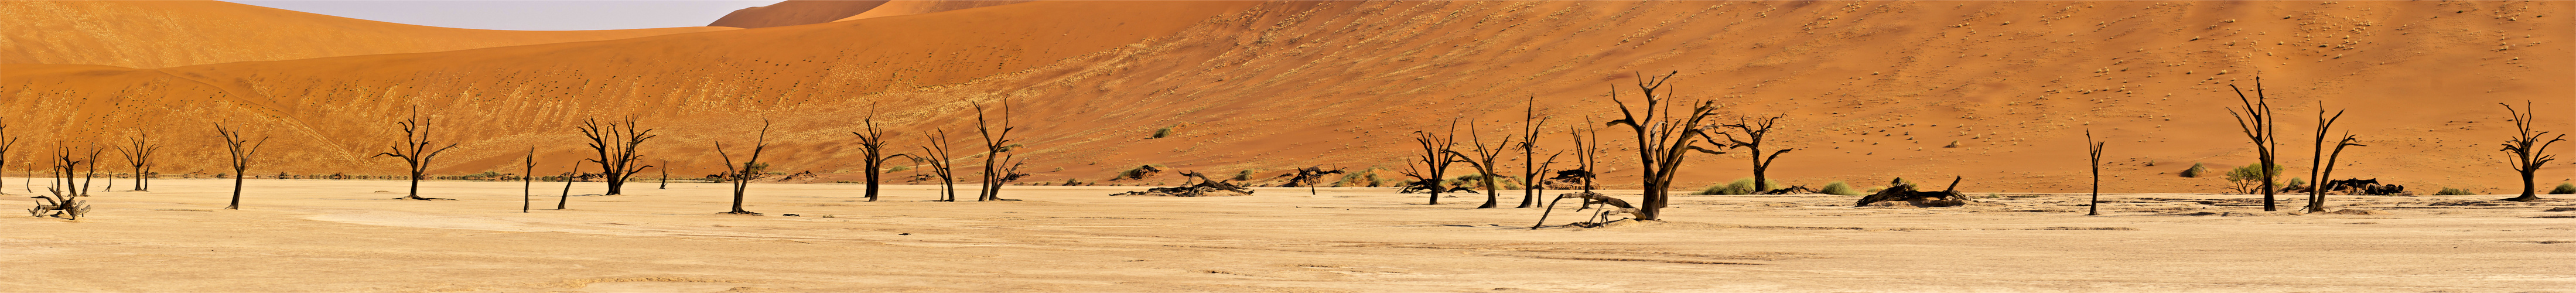 Deadvlei im Panorama/ Namib / 2011